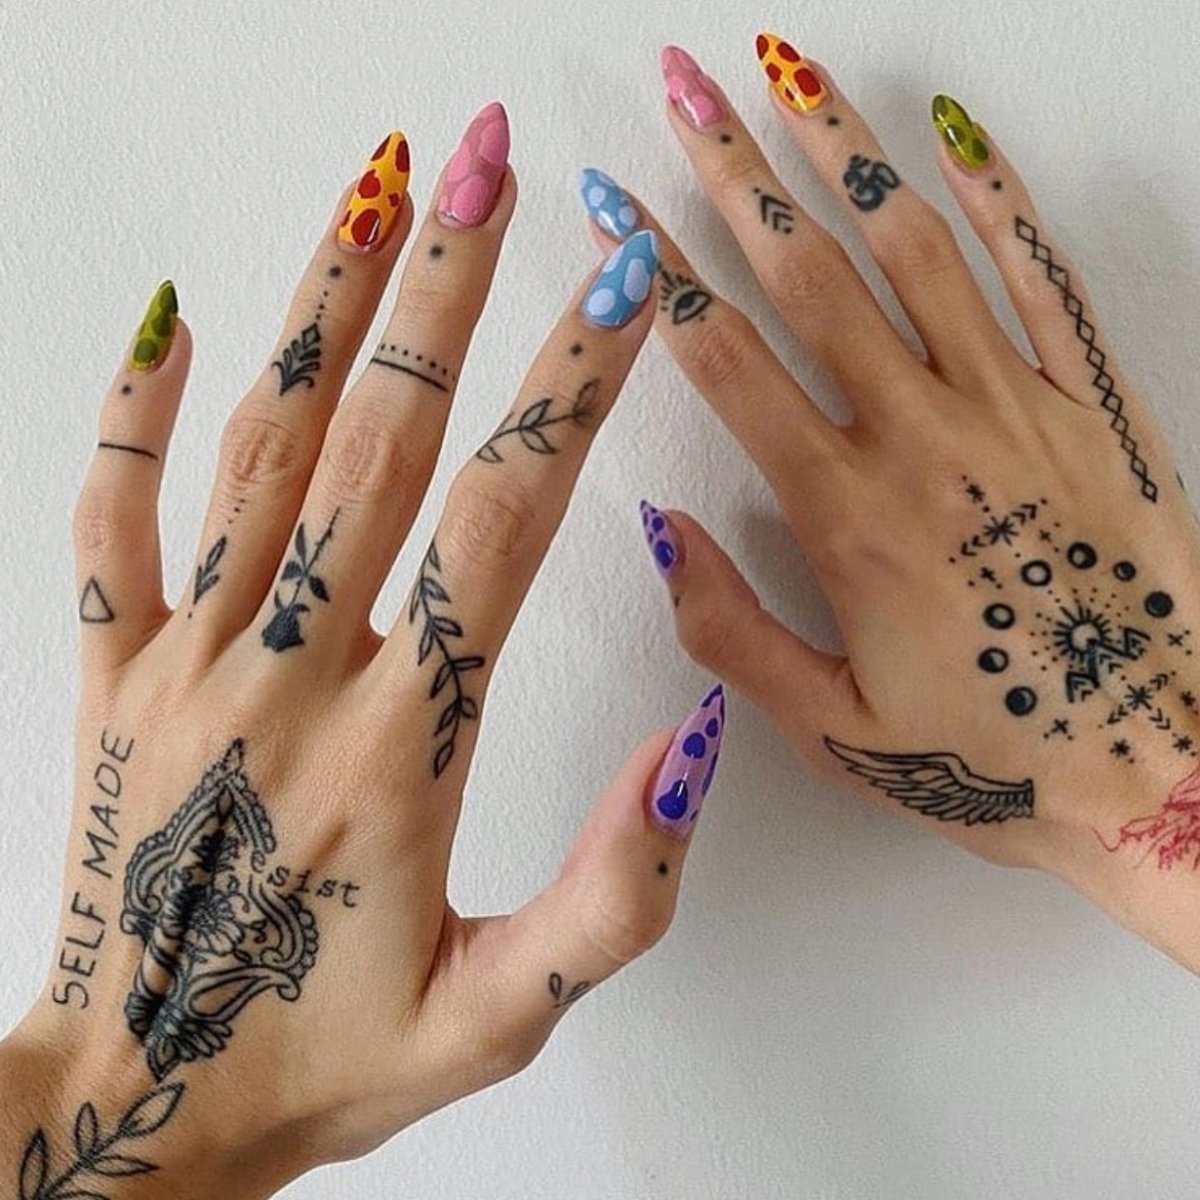 Combinaciones de diseños de uñas y tatuajes en los dedos